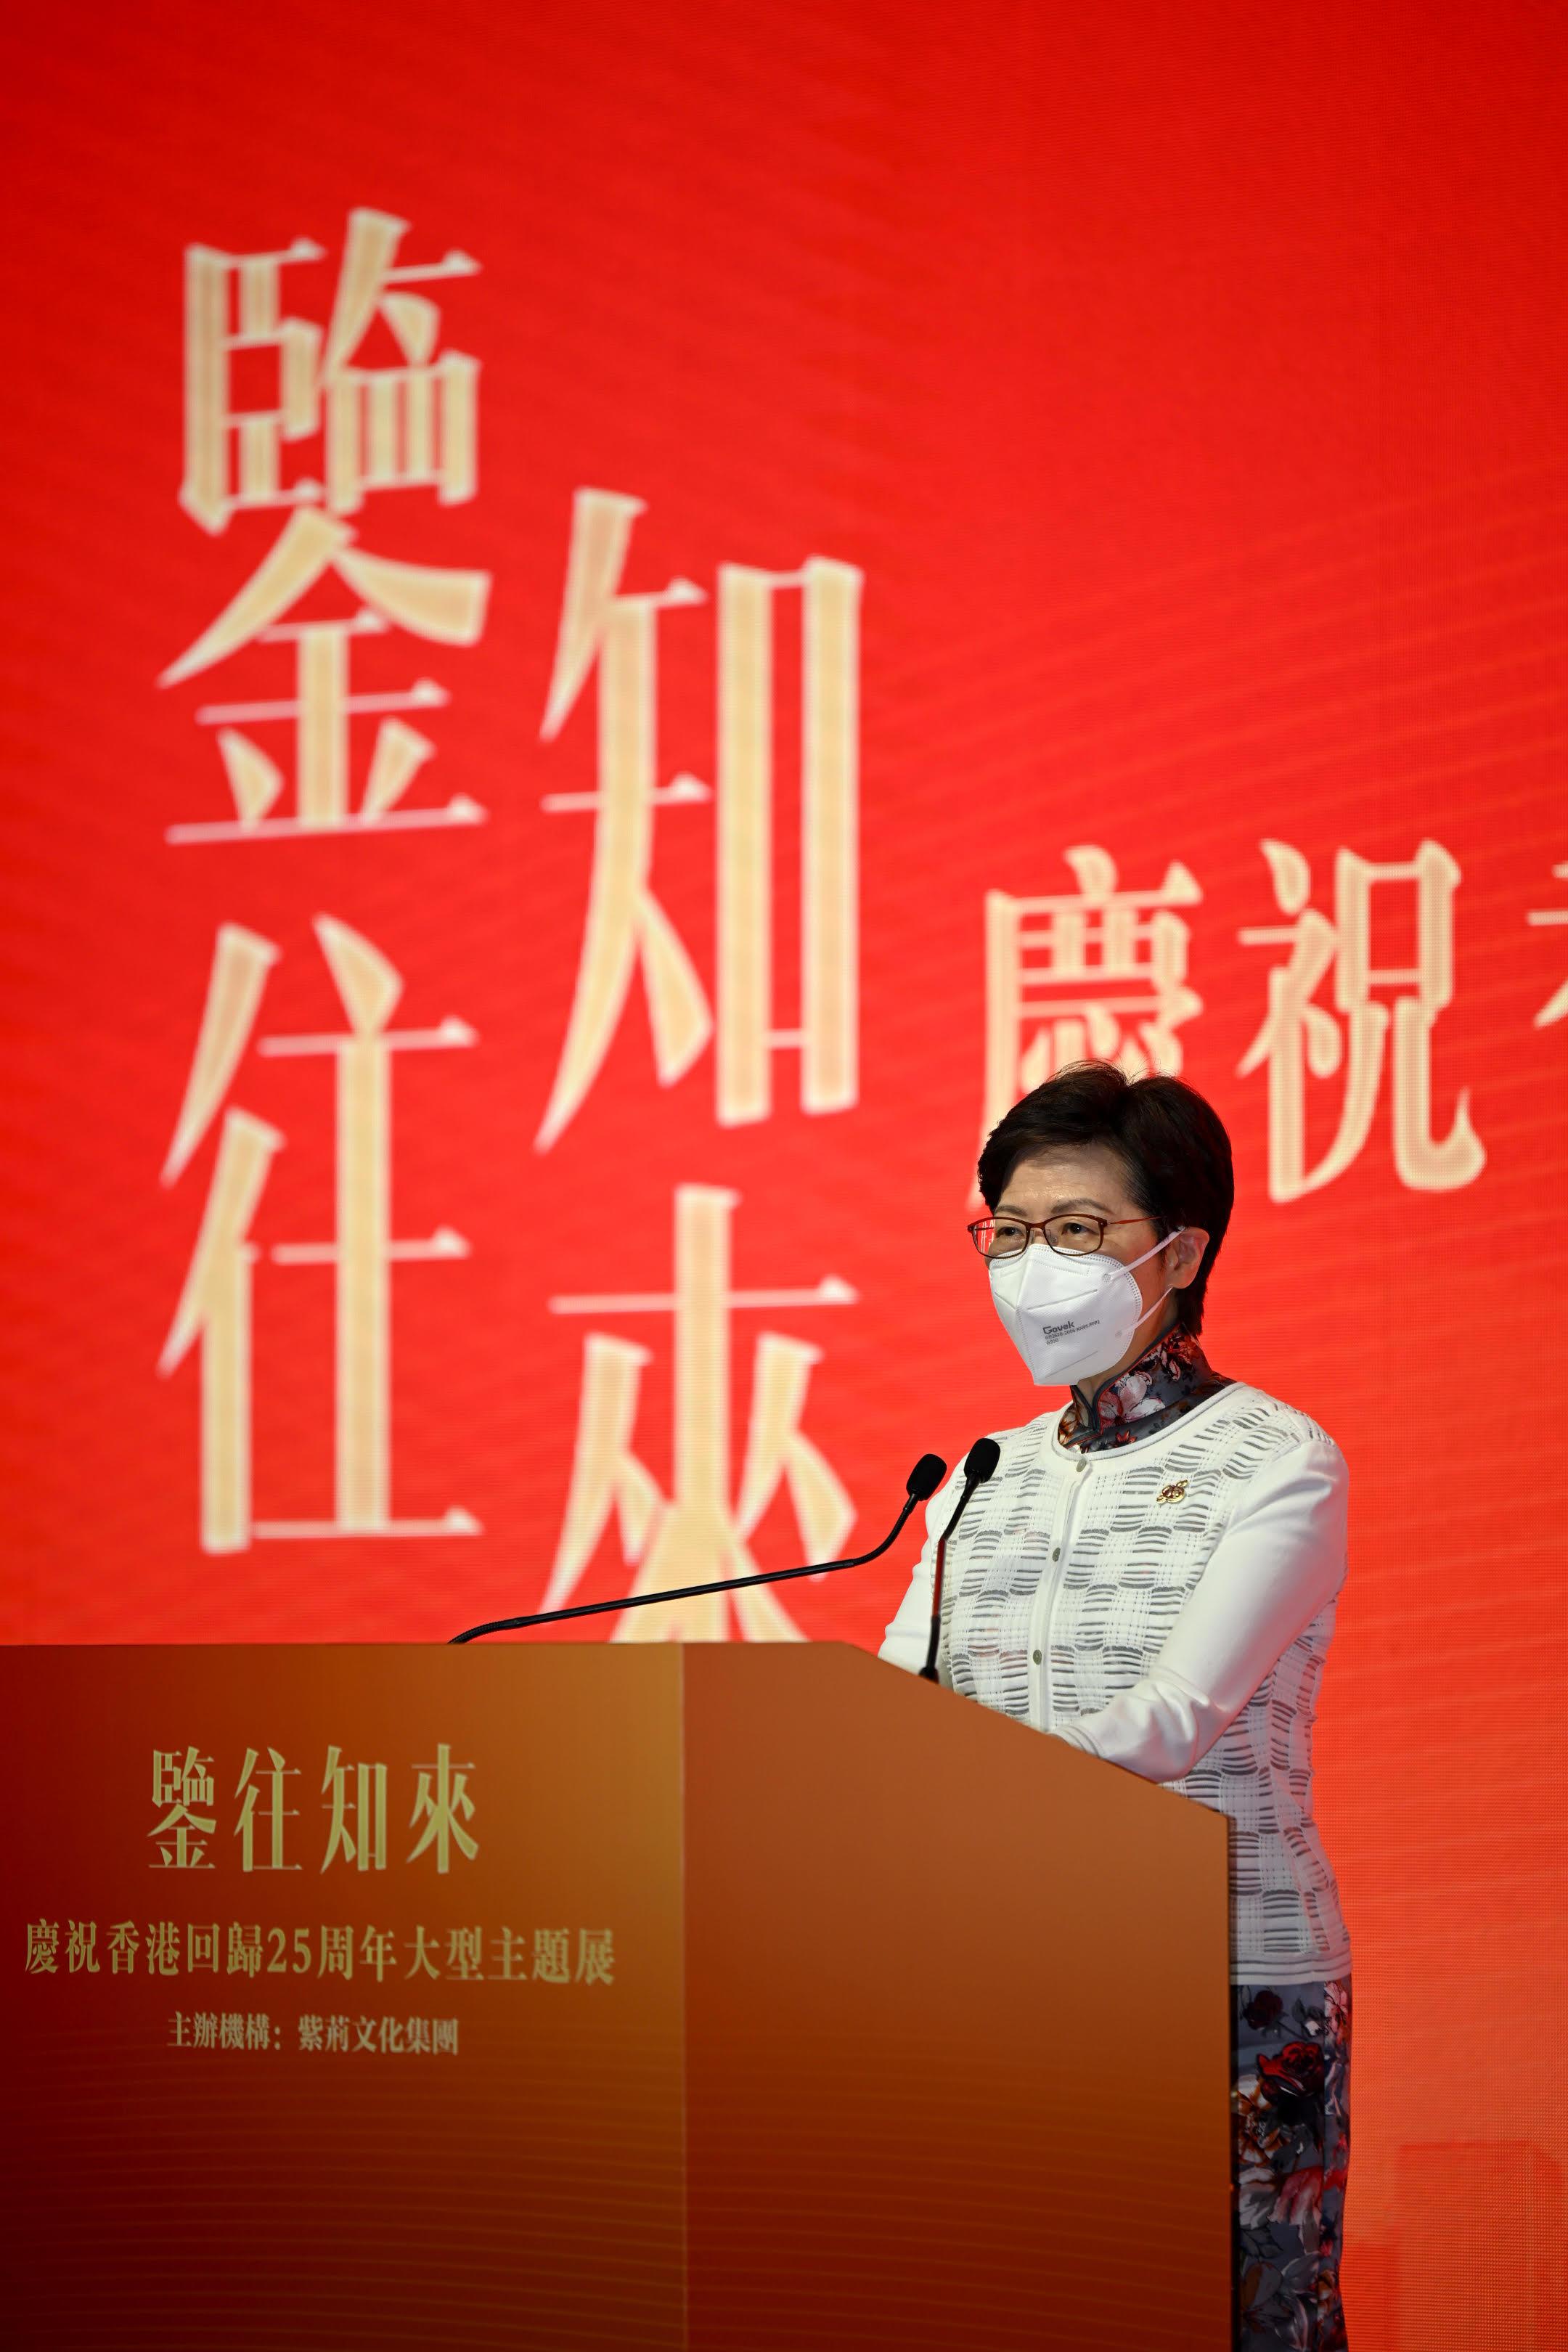 行政長官林鄭月娥今日（六月二十一日）下午在紫荊文化集團主辦的鑒往知來──慶祝香港回歸25周年大型主題展開幕儀式致辭。